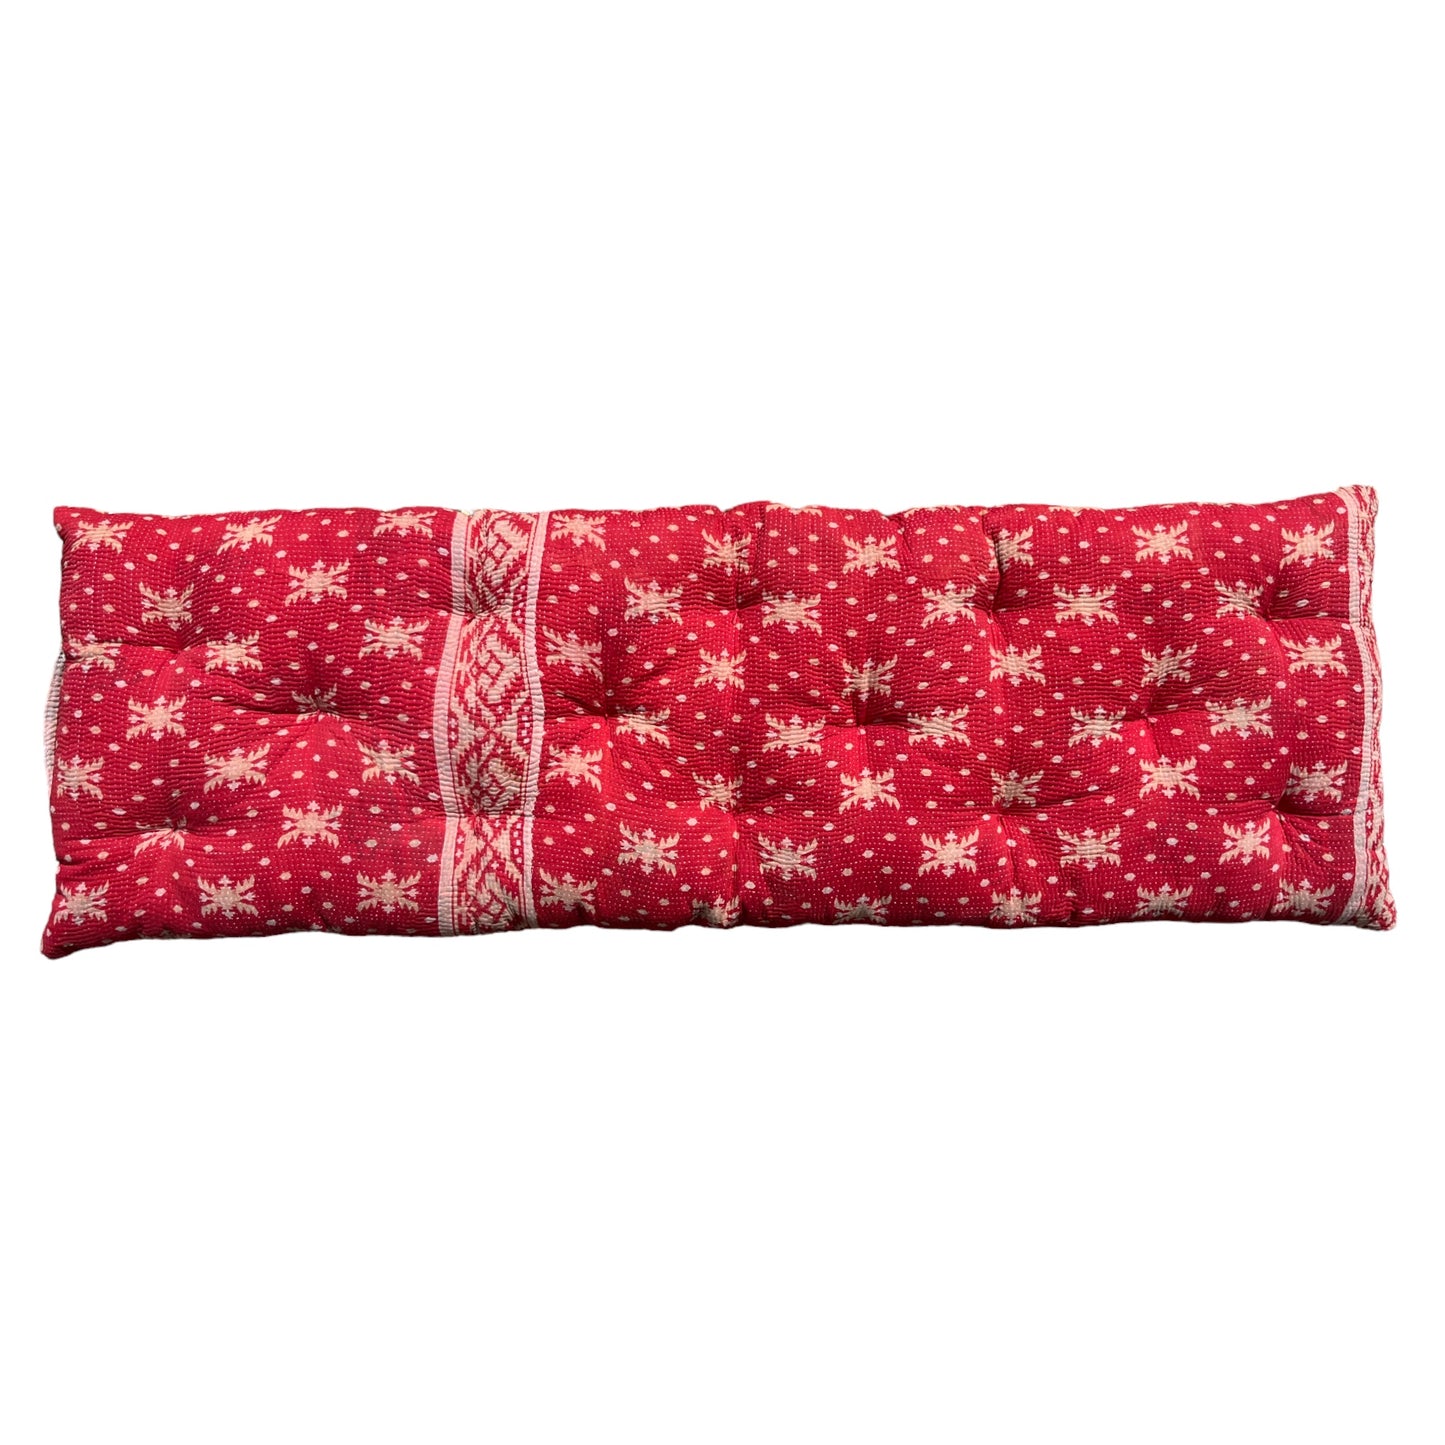 Red kantha bench cushion